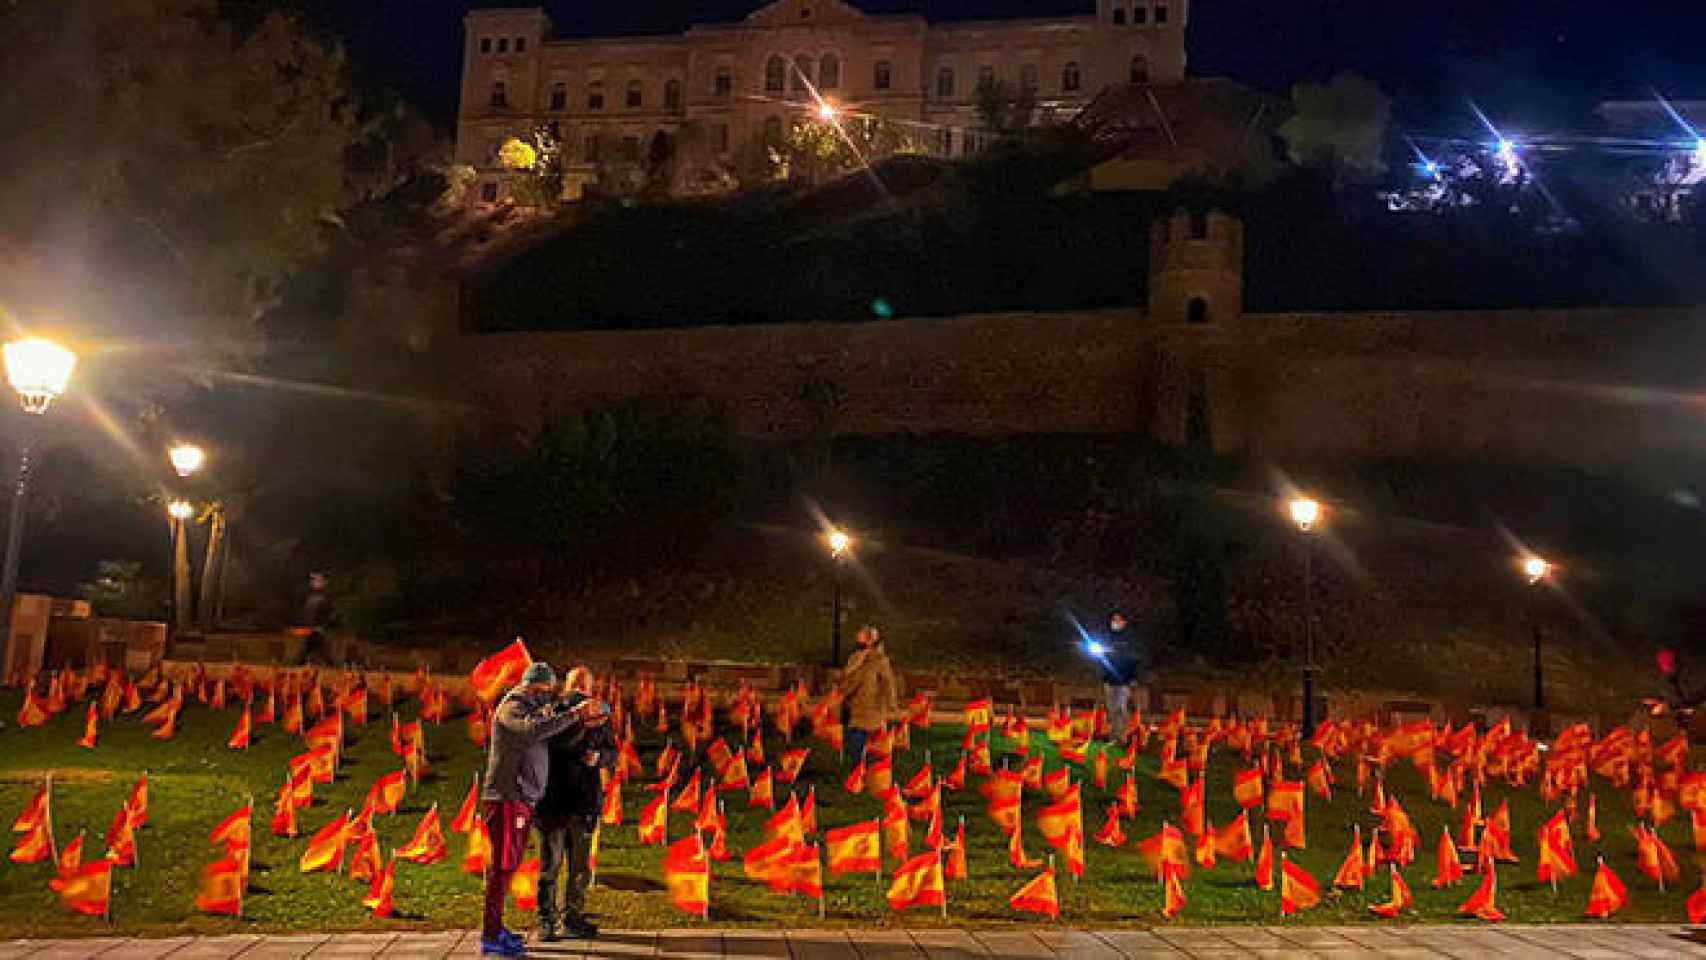 56.000 banderas de España en el Paseo Recaredo de Toledo